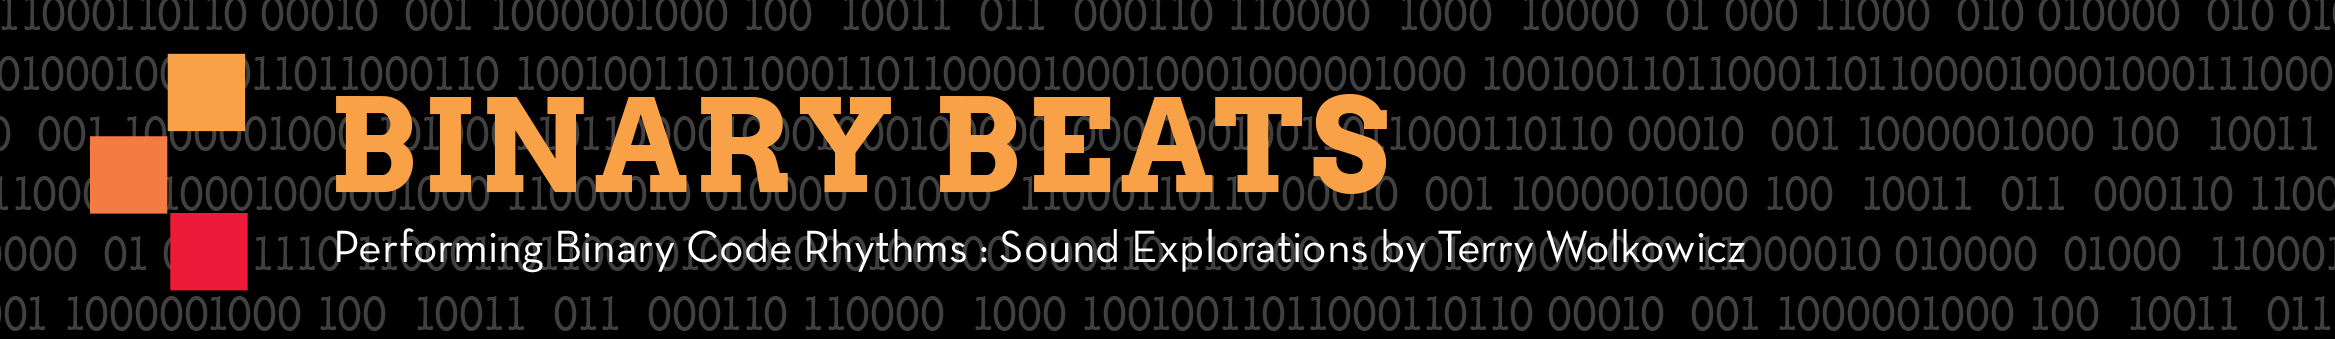 Binary Beats logo